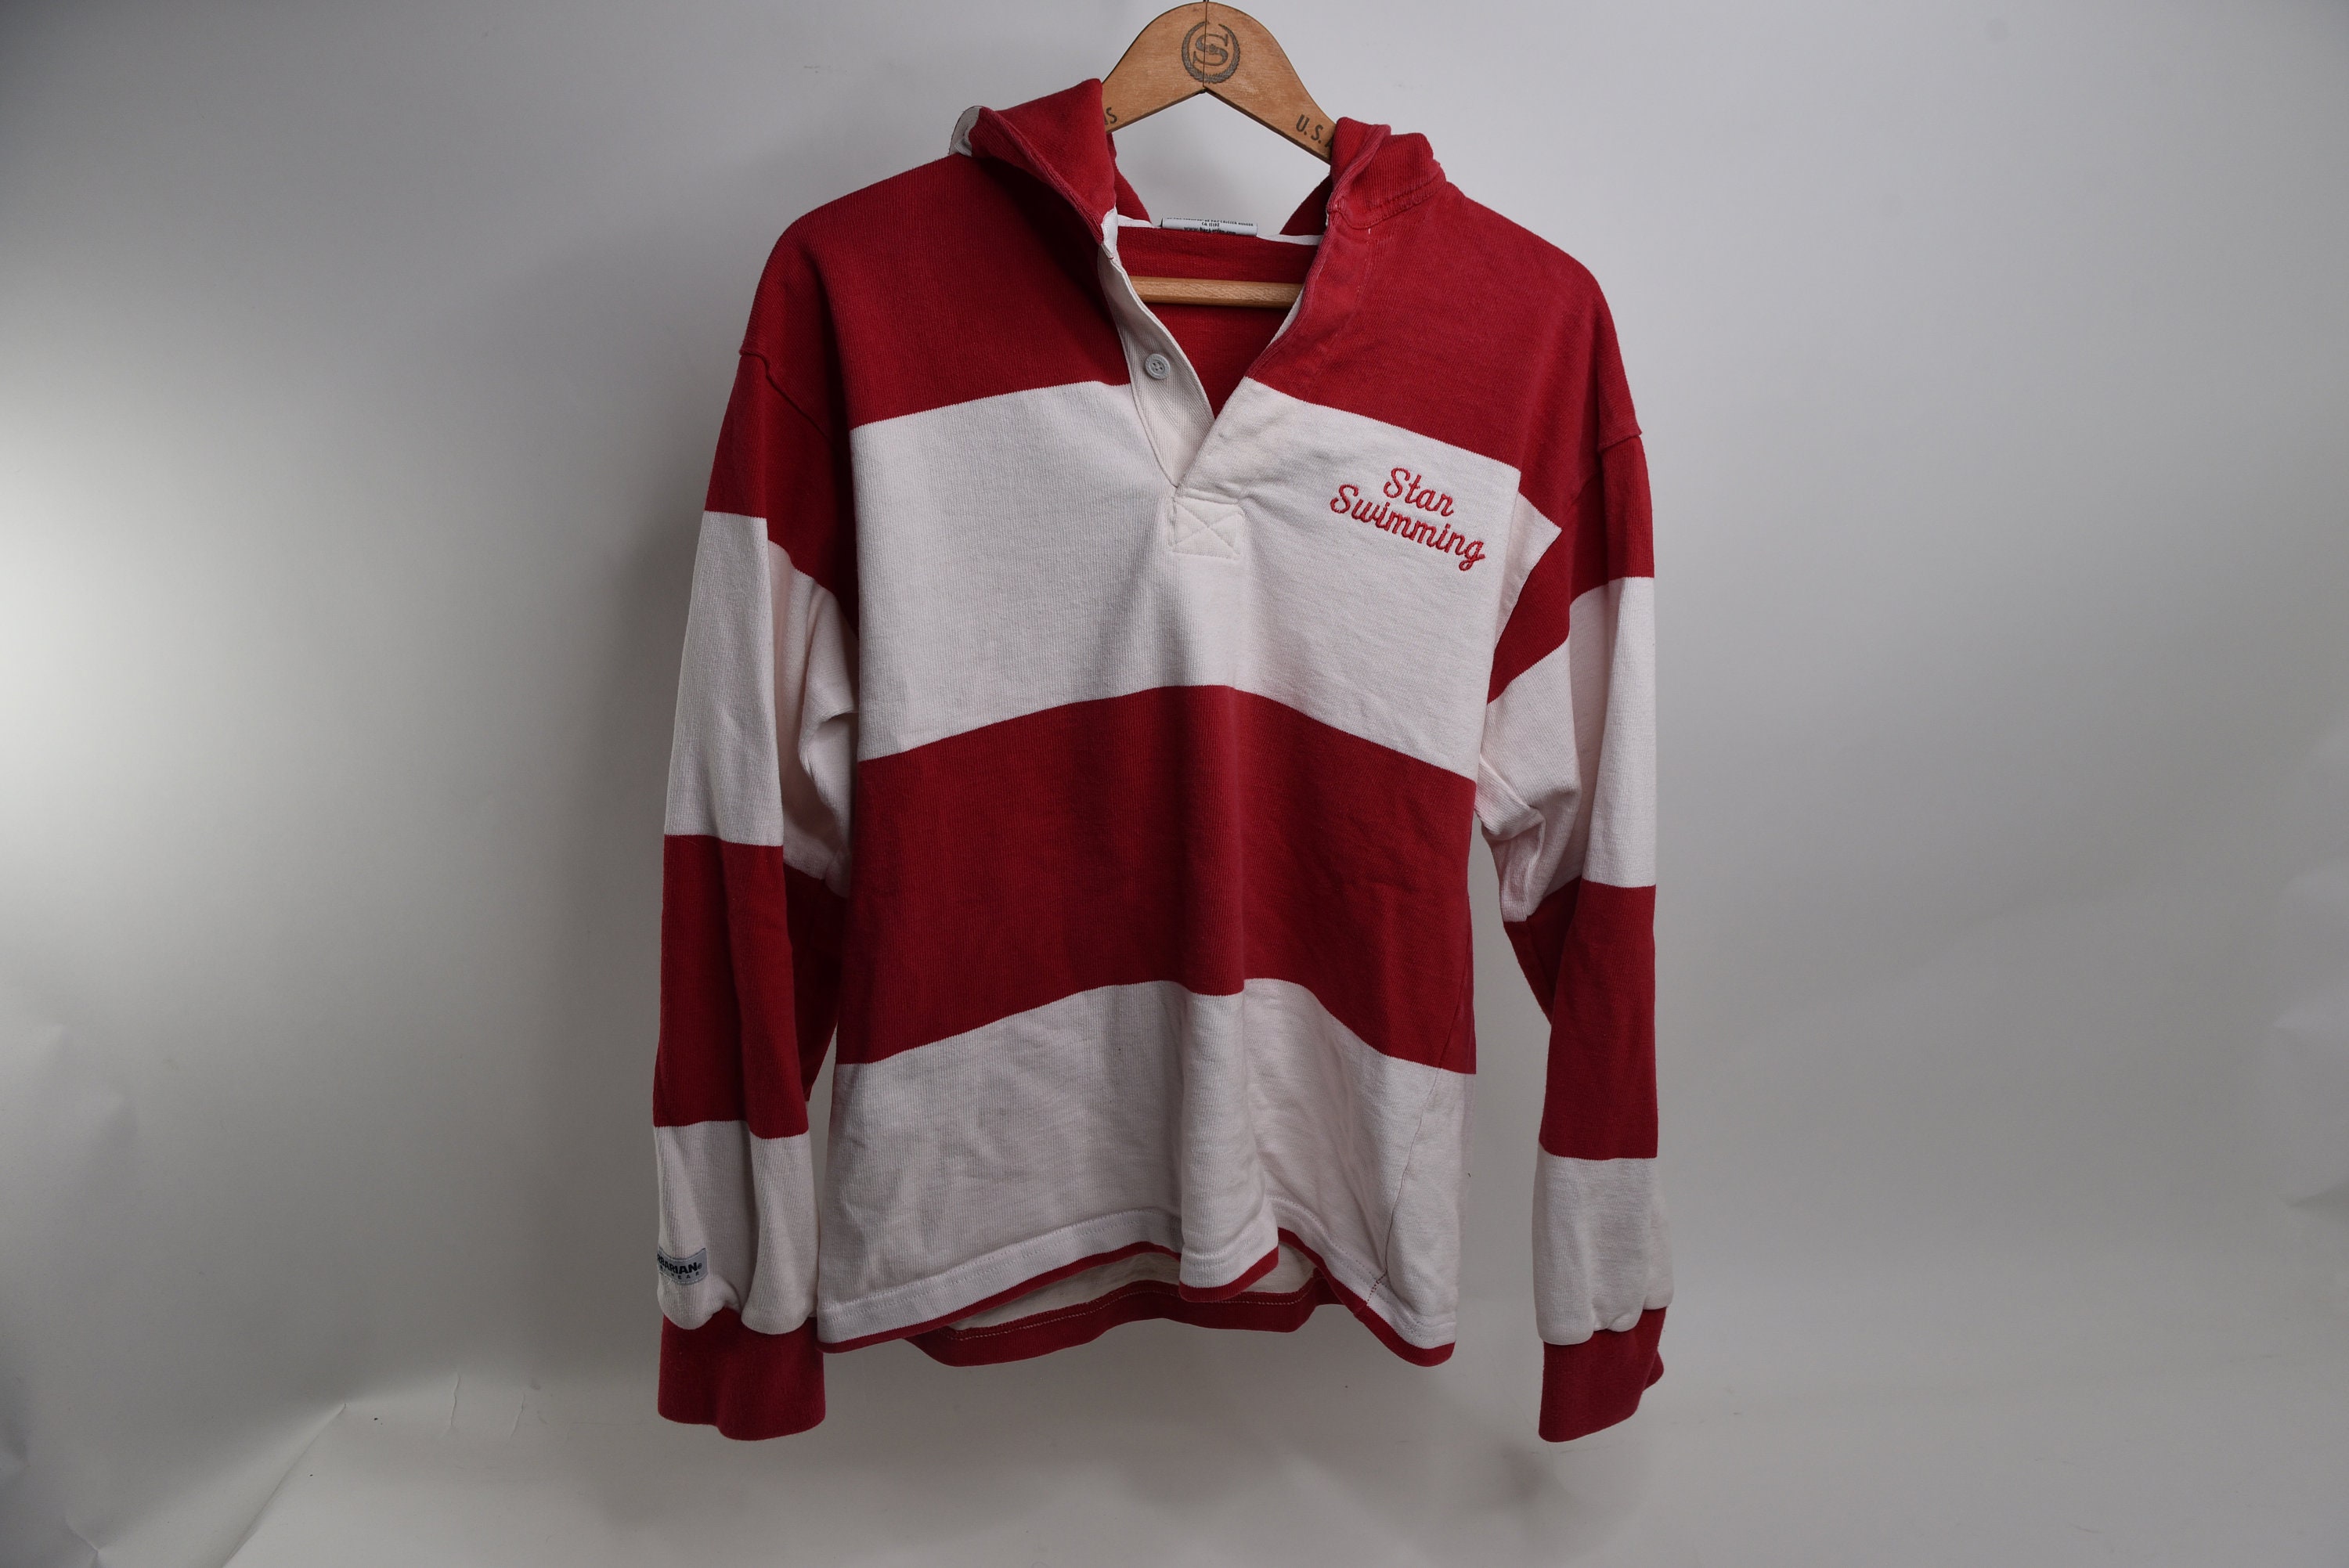 Vintage Rugby Shirt - Shop Online